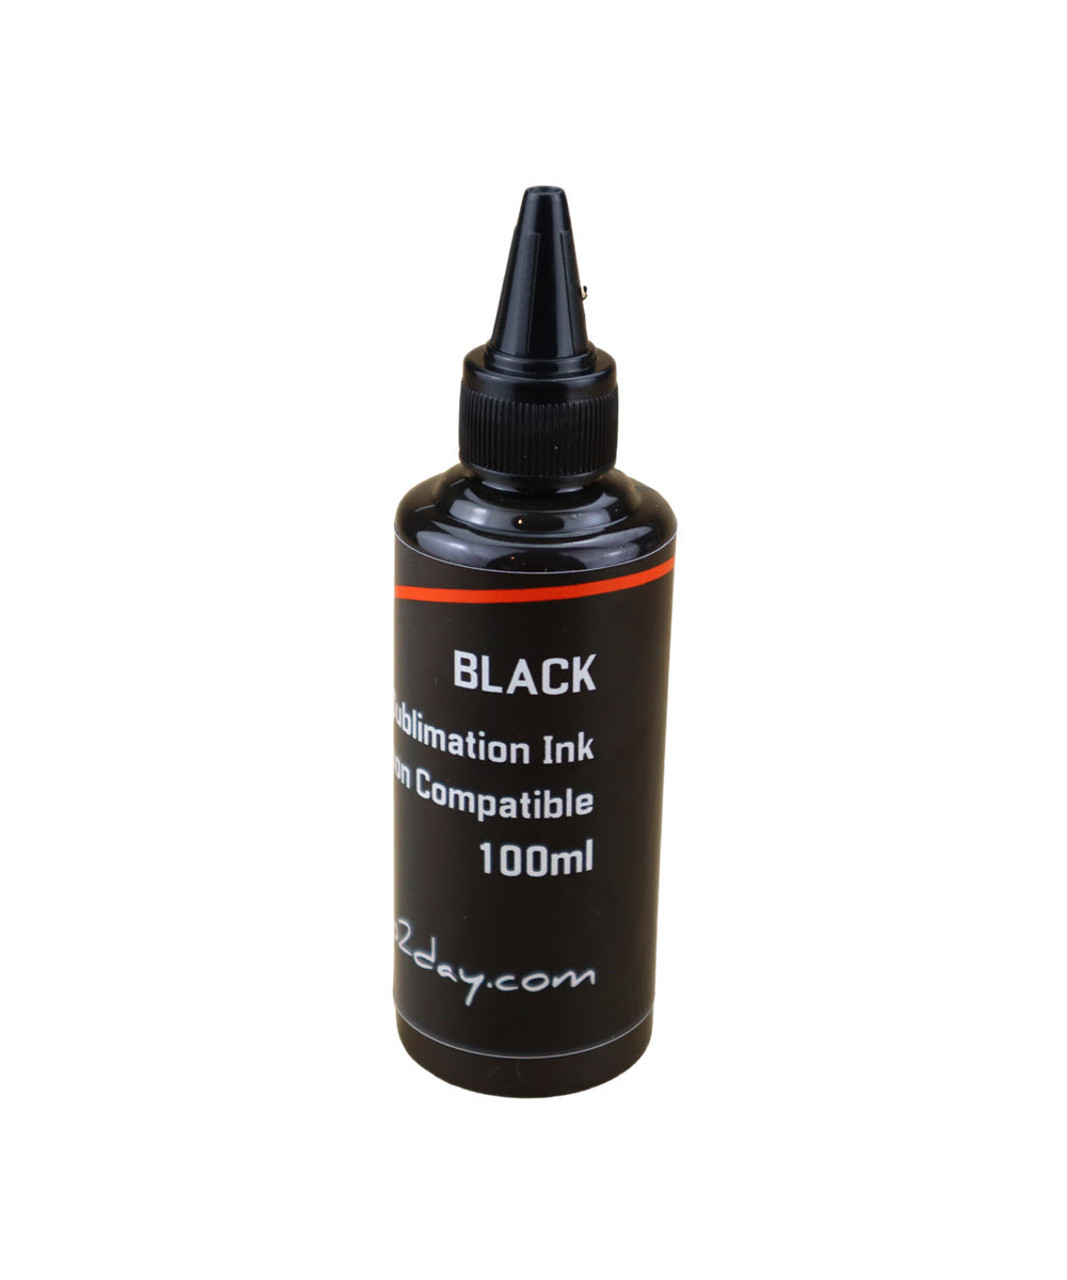 Black Dye Sublimation Ink 100ml Bottle for EPSON EcoTank ET-8500 ET-8550 Printer